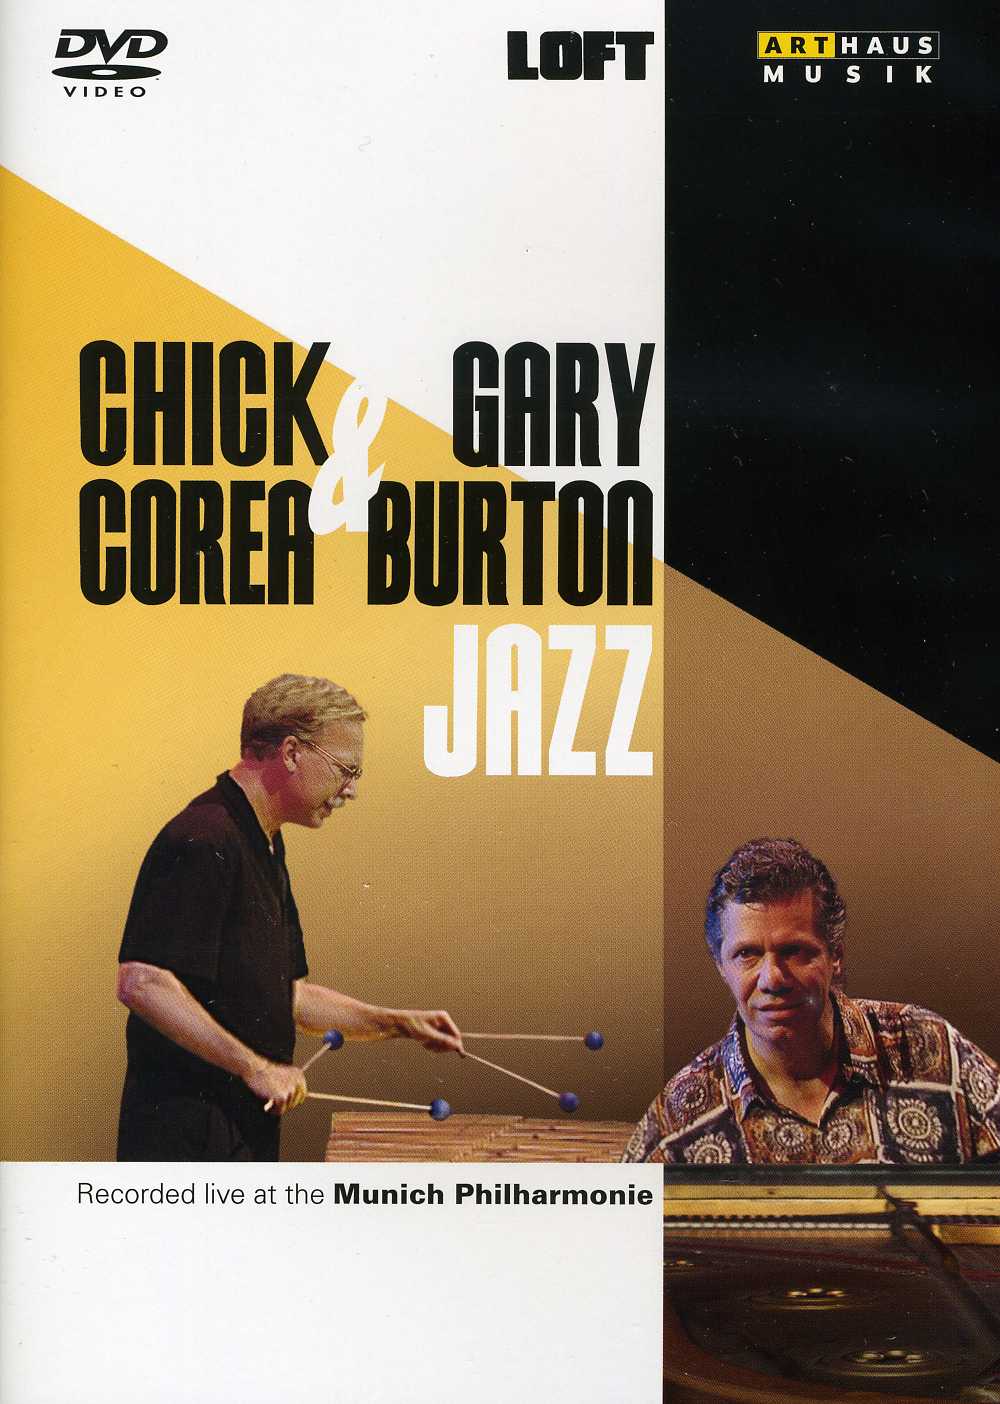 CHICK COREA & GARY BURTON JAZZ